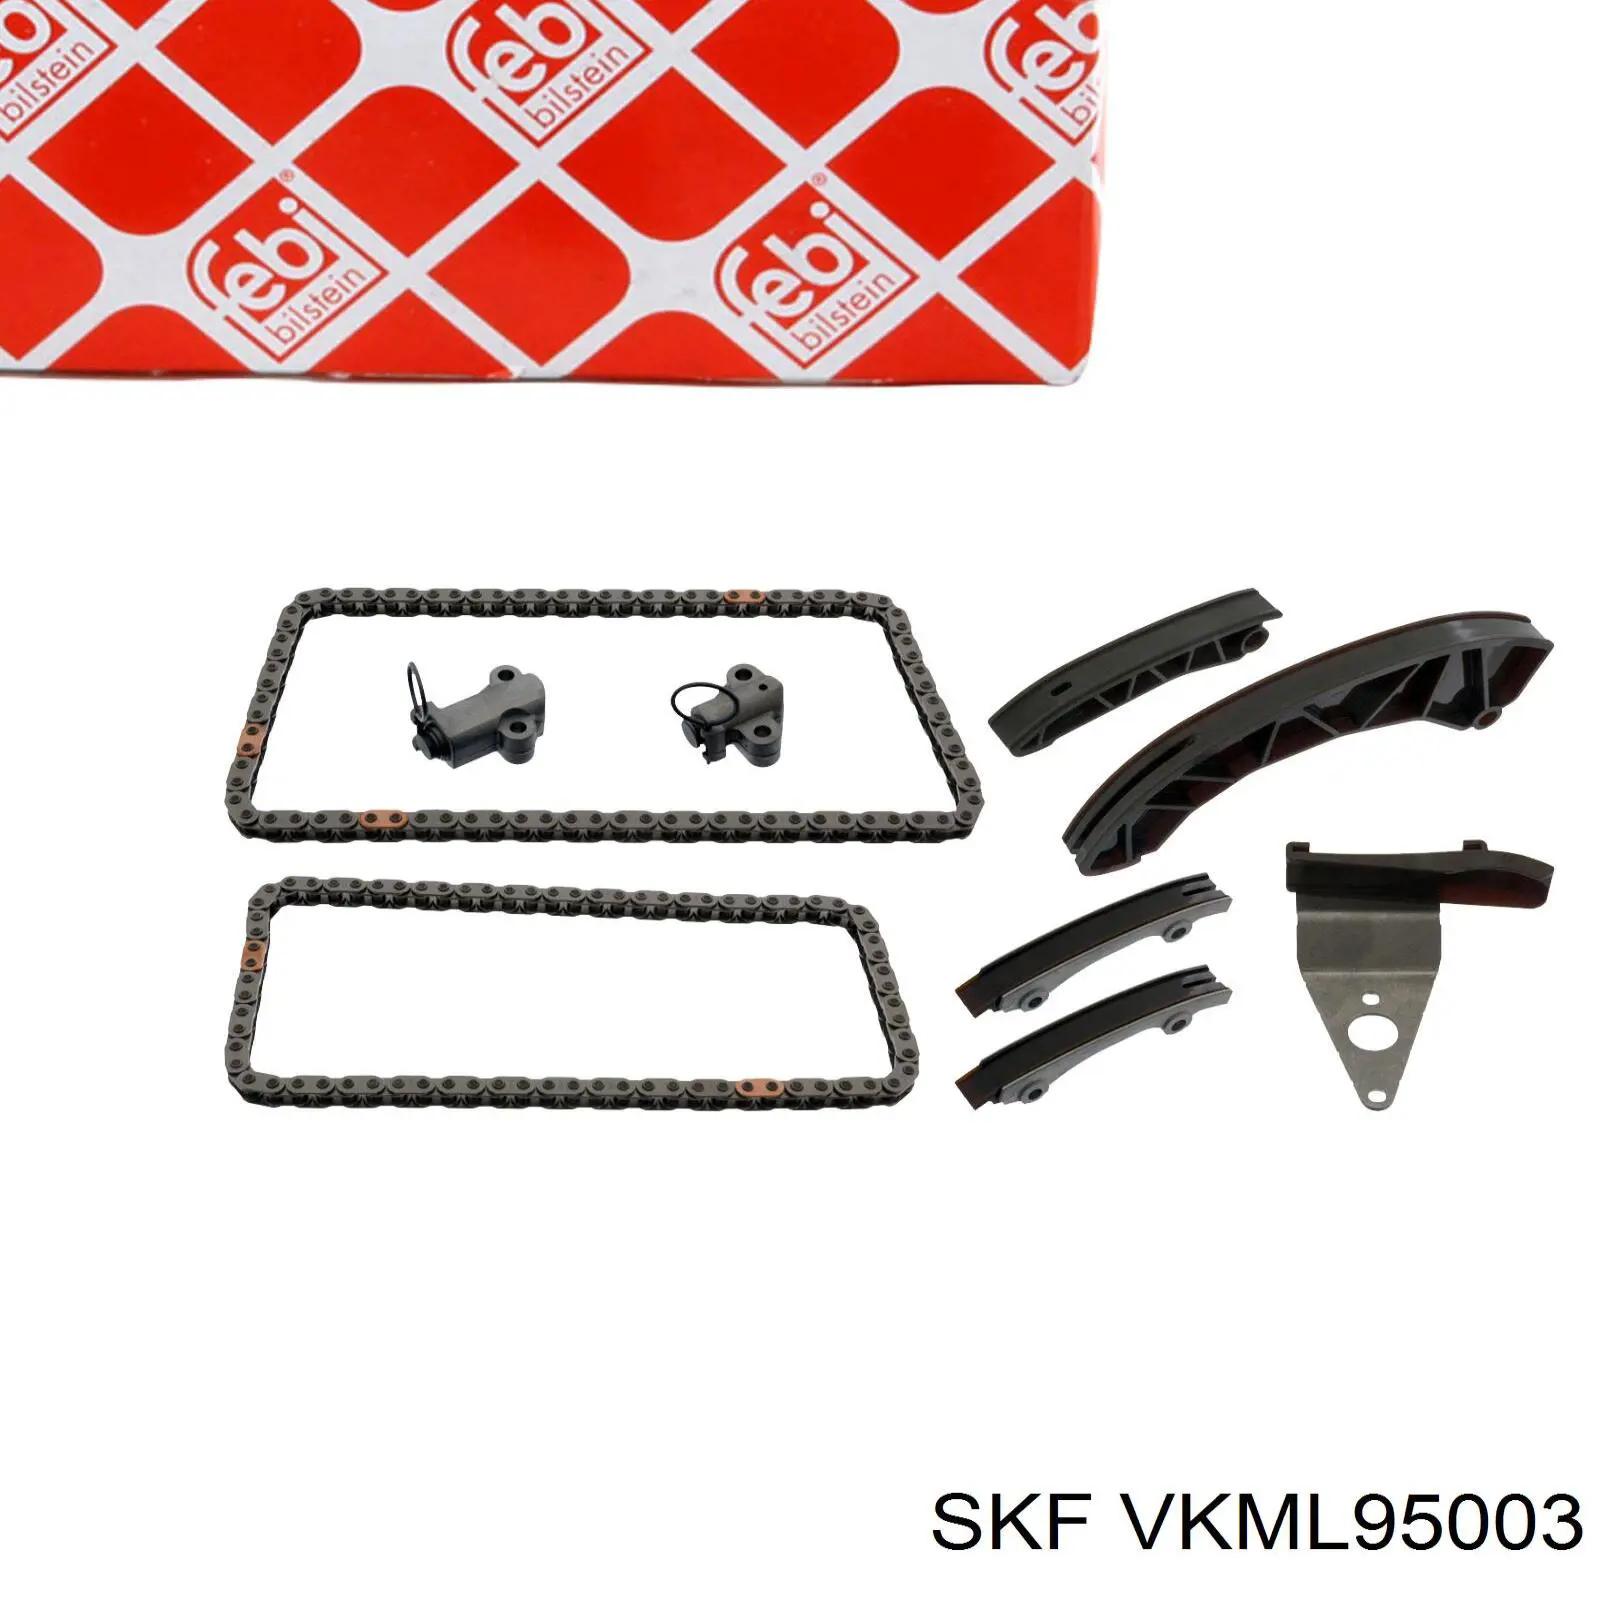 VKML95003 SKF ланцюг грм, комплект